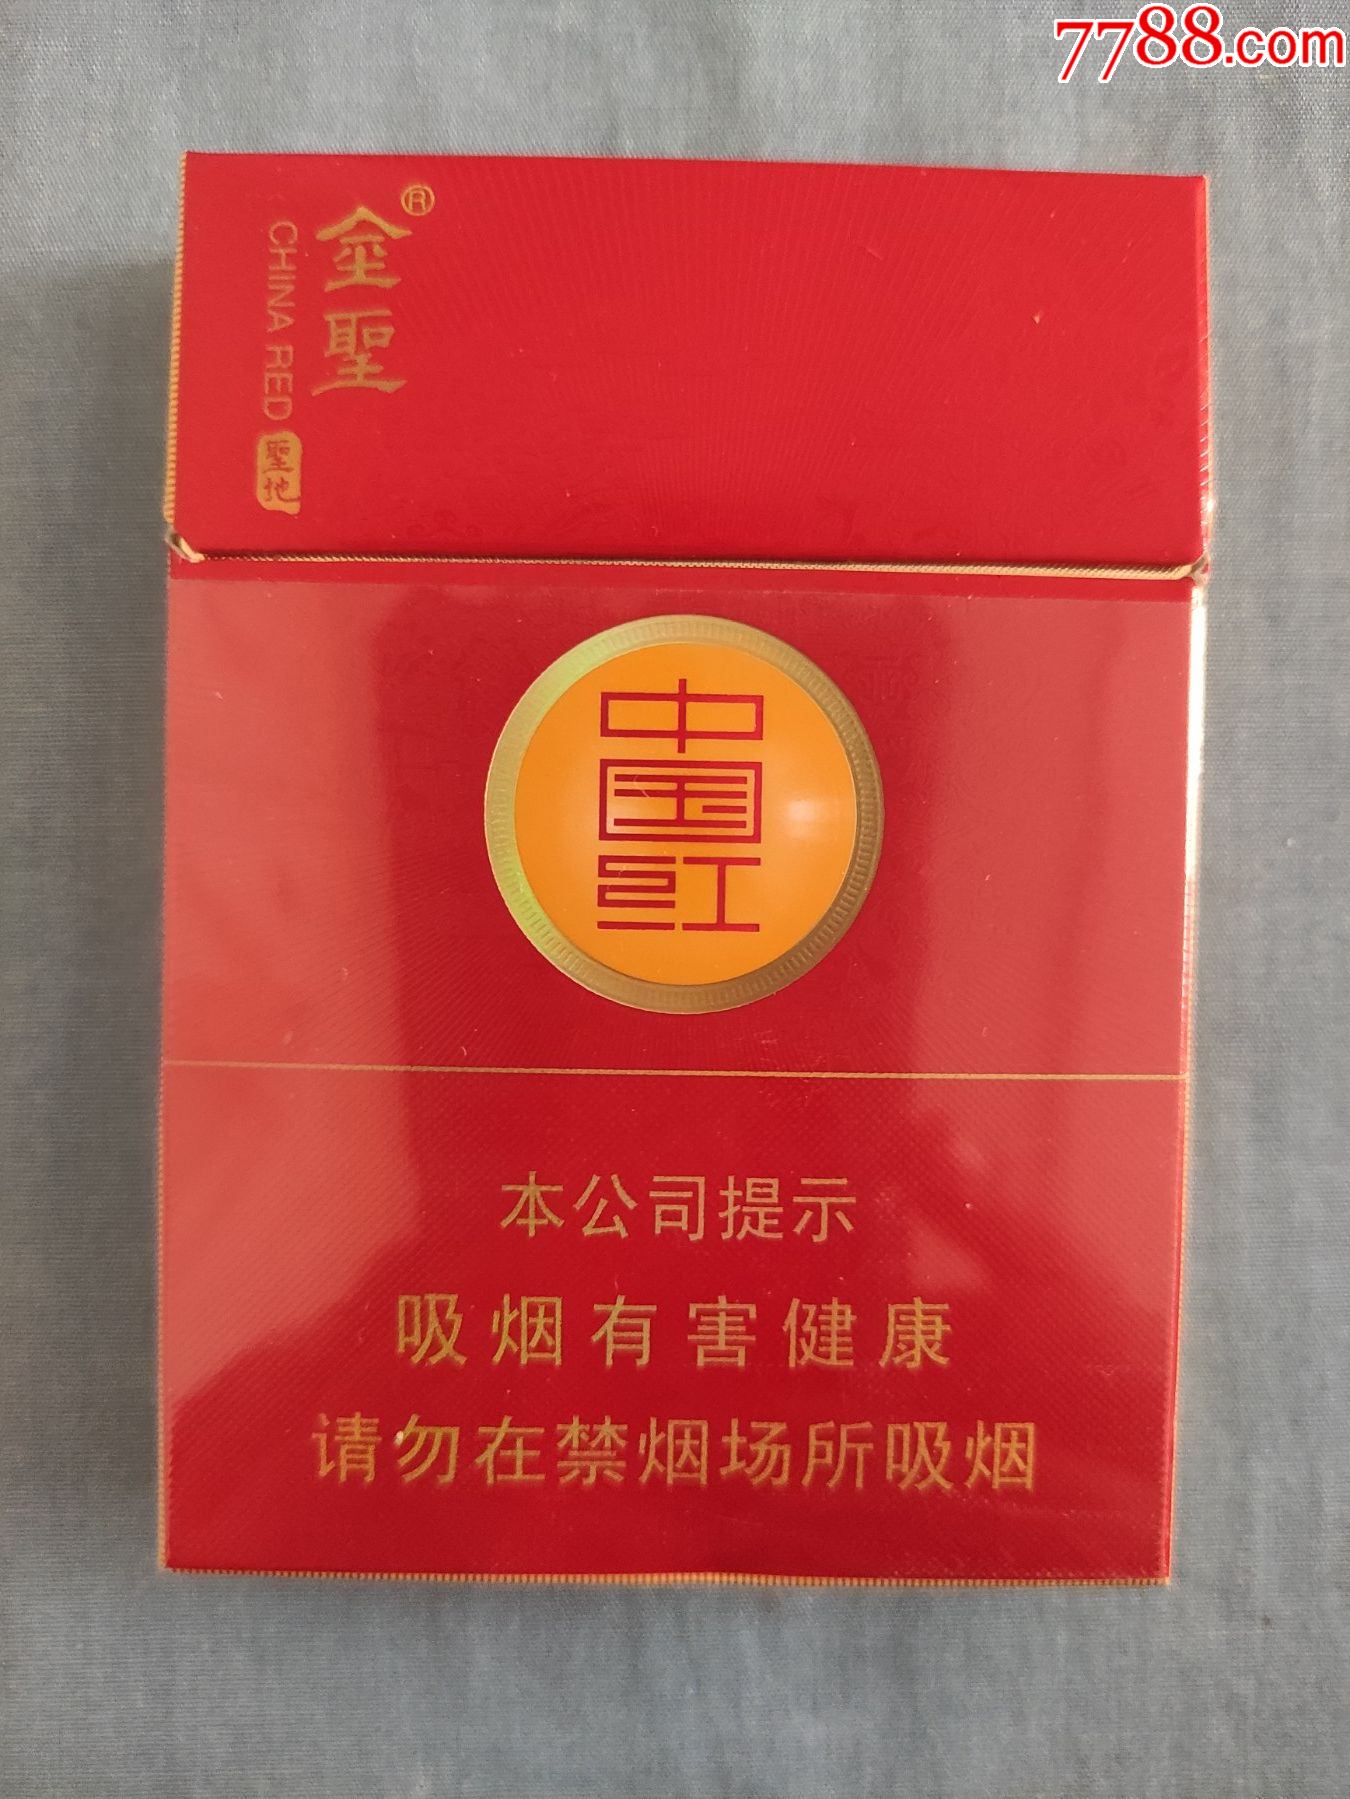 金圣中国红外包装图片